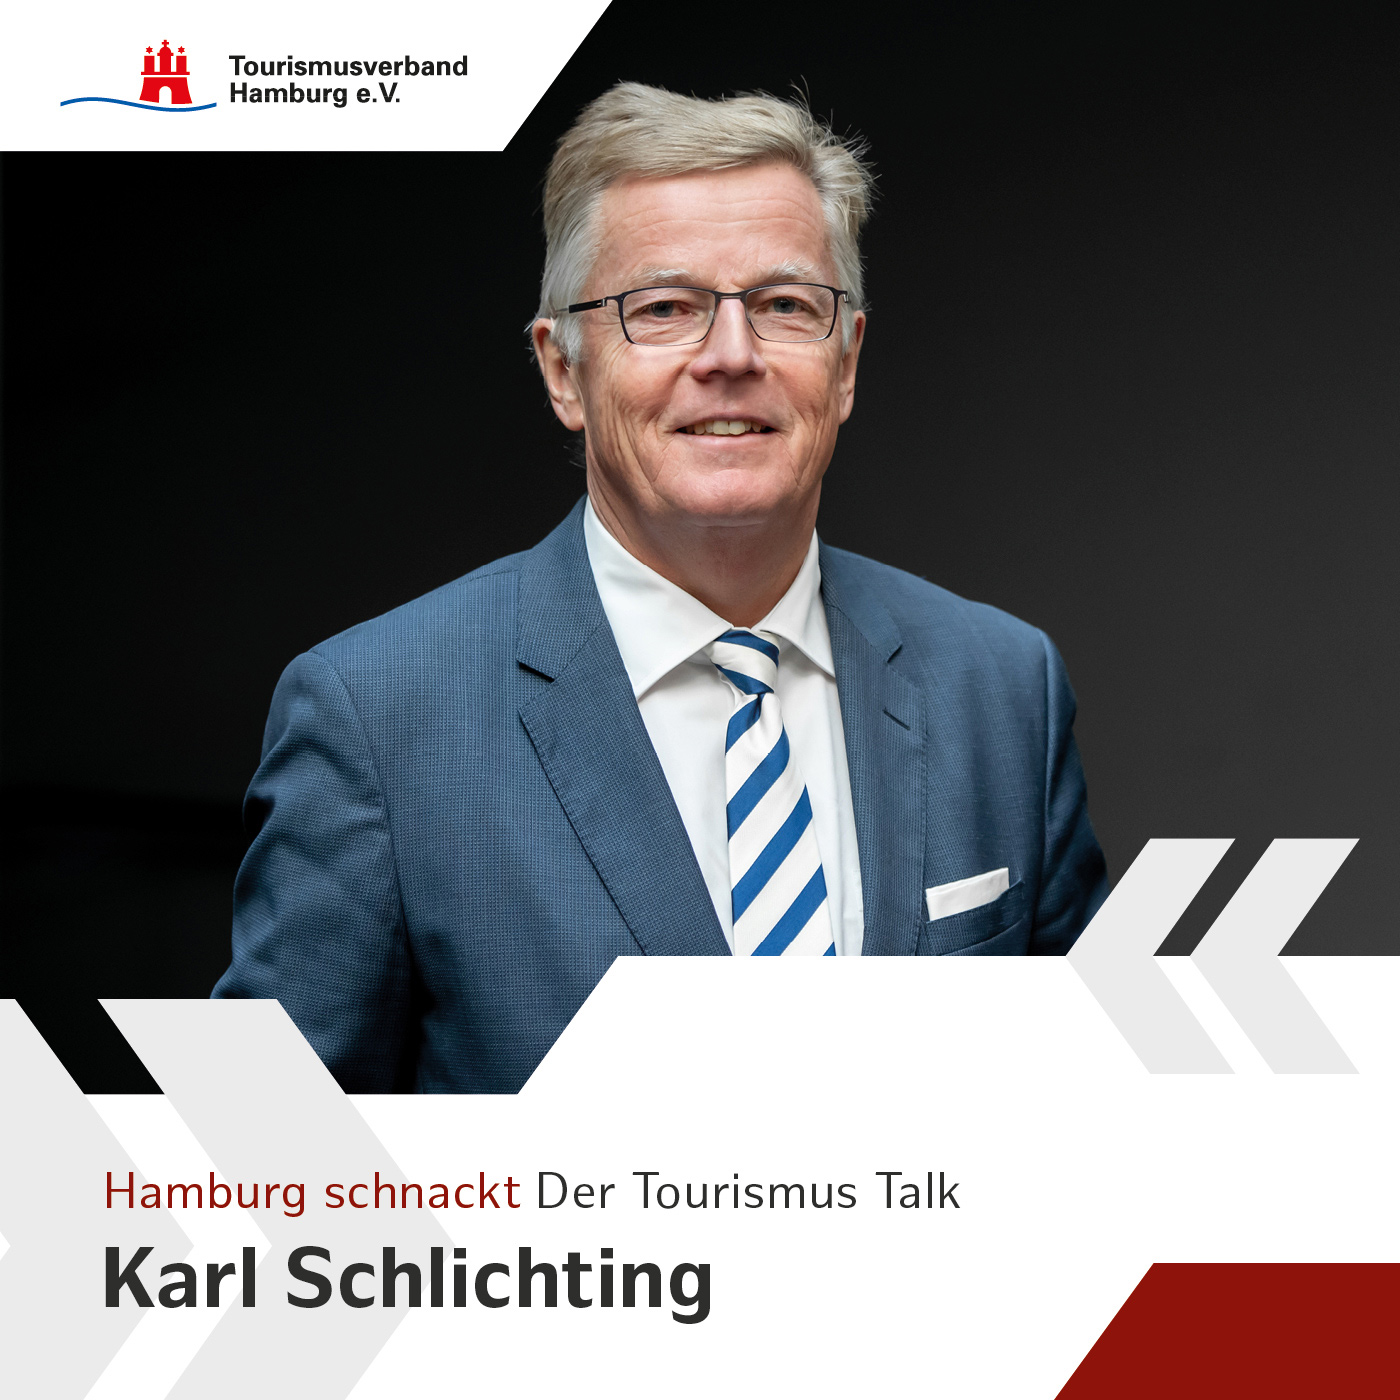 Hamburg schnackt – mit Carl Schlichting, 2. Stellvertretender Vorsitzender des TVH und Privathotelier